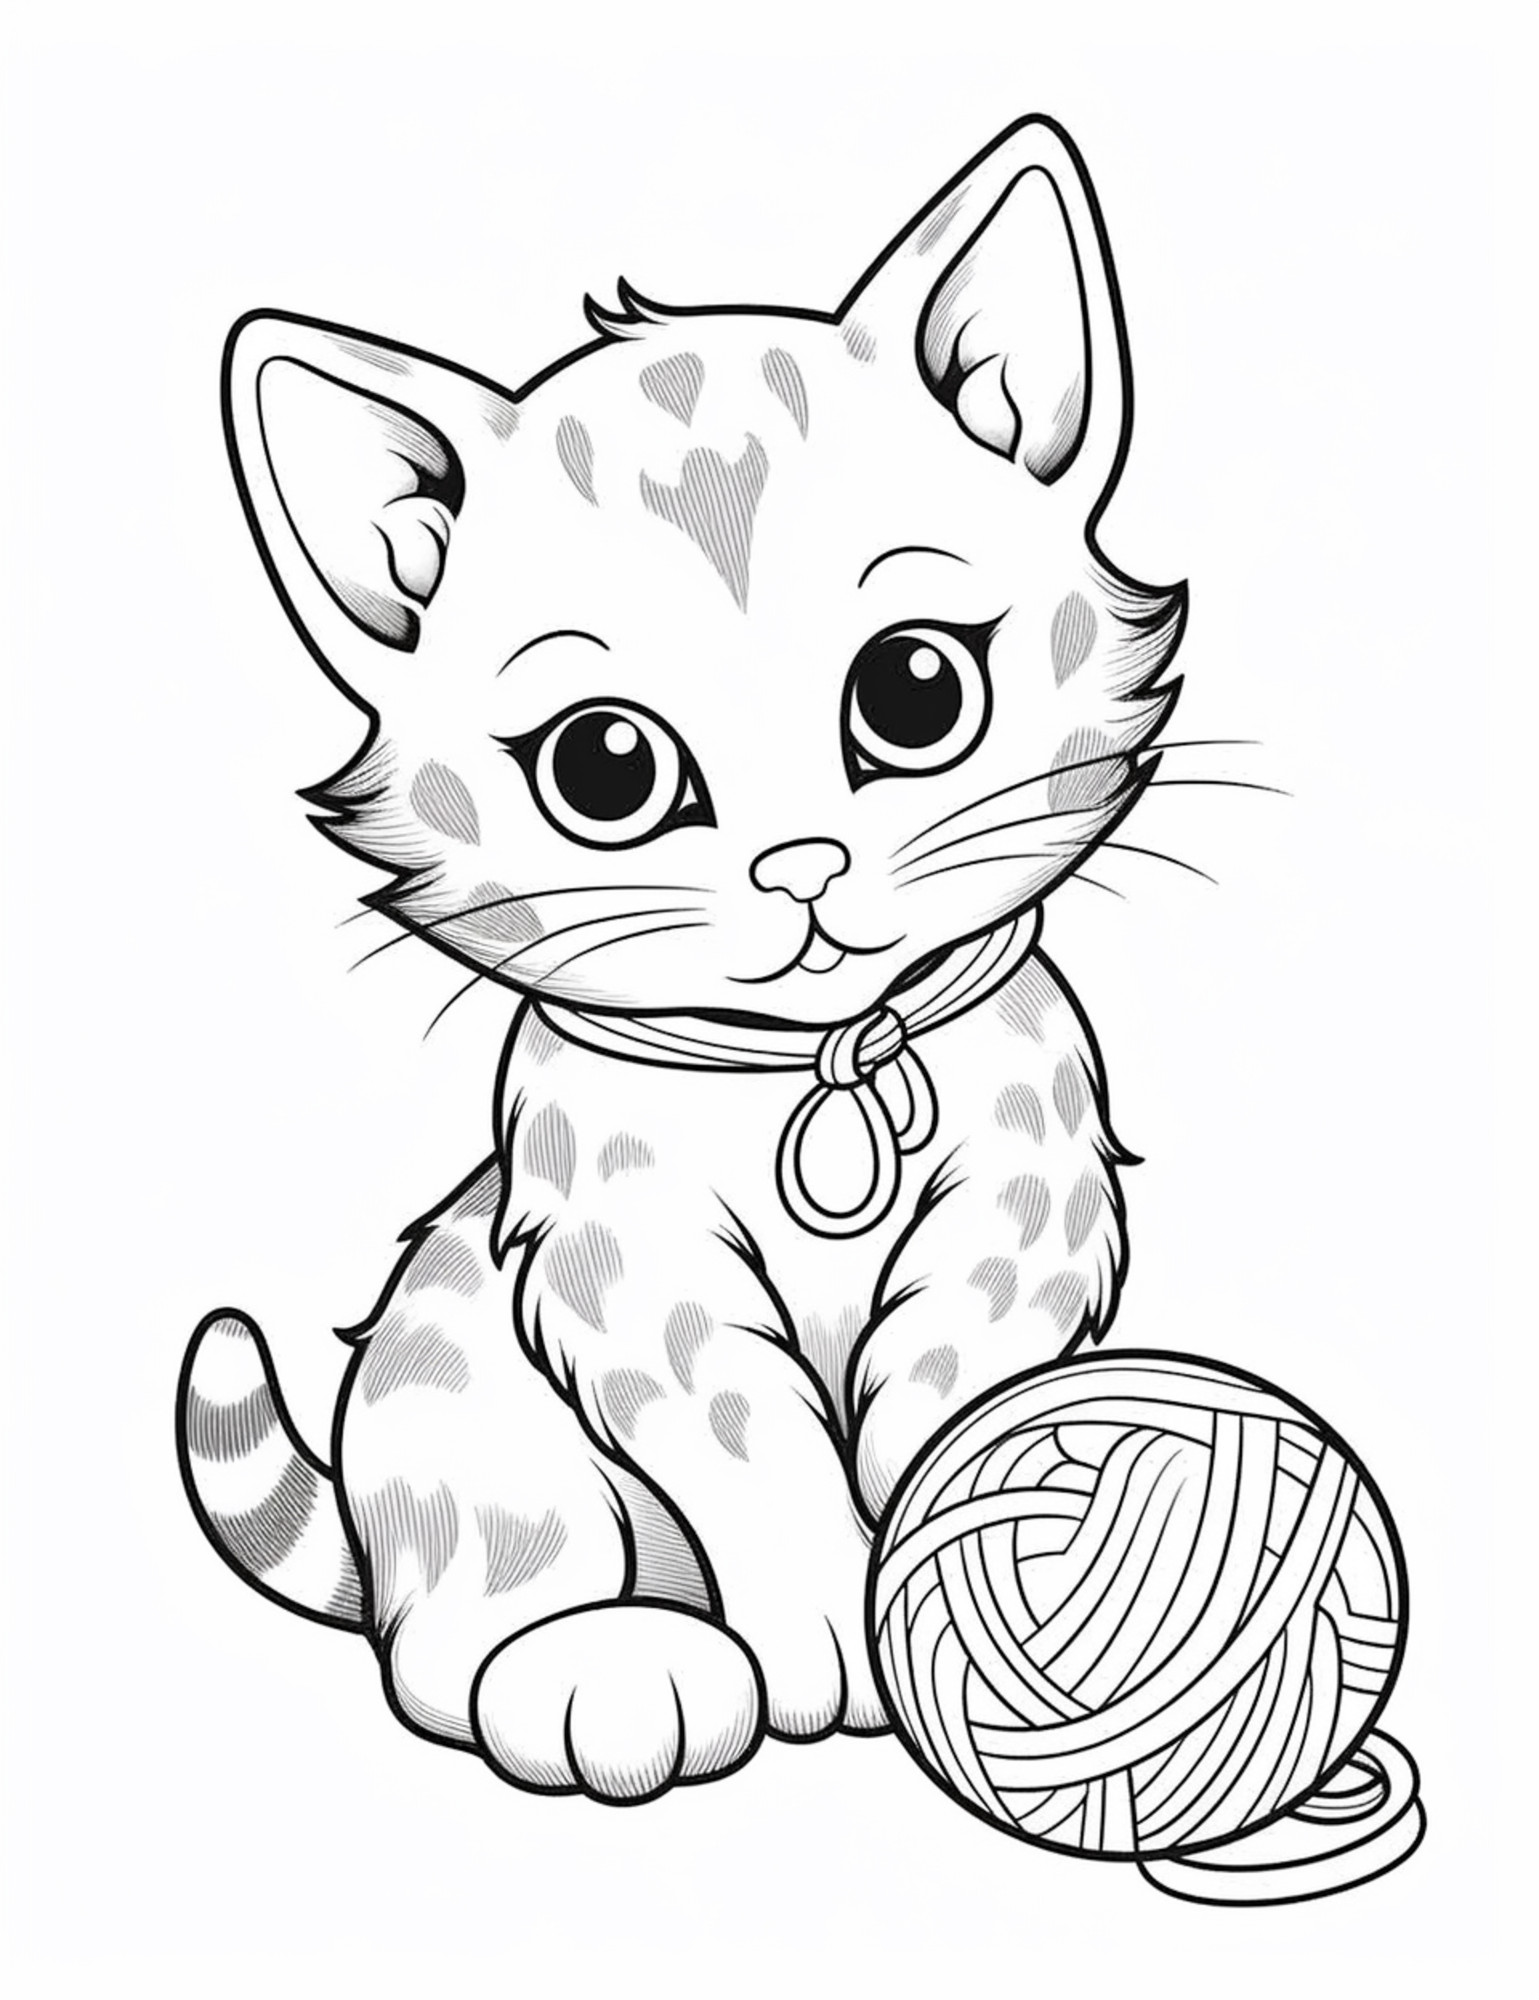 Раскраска для детей: котенок с большими глазами играет с клубком